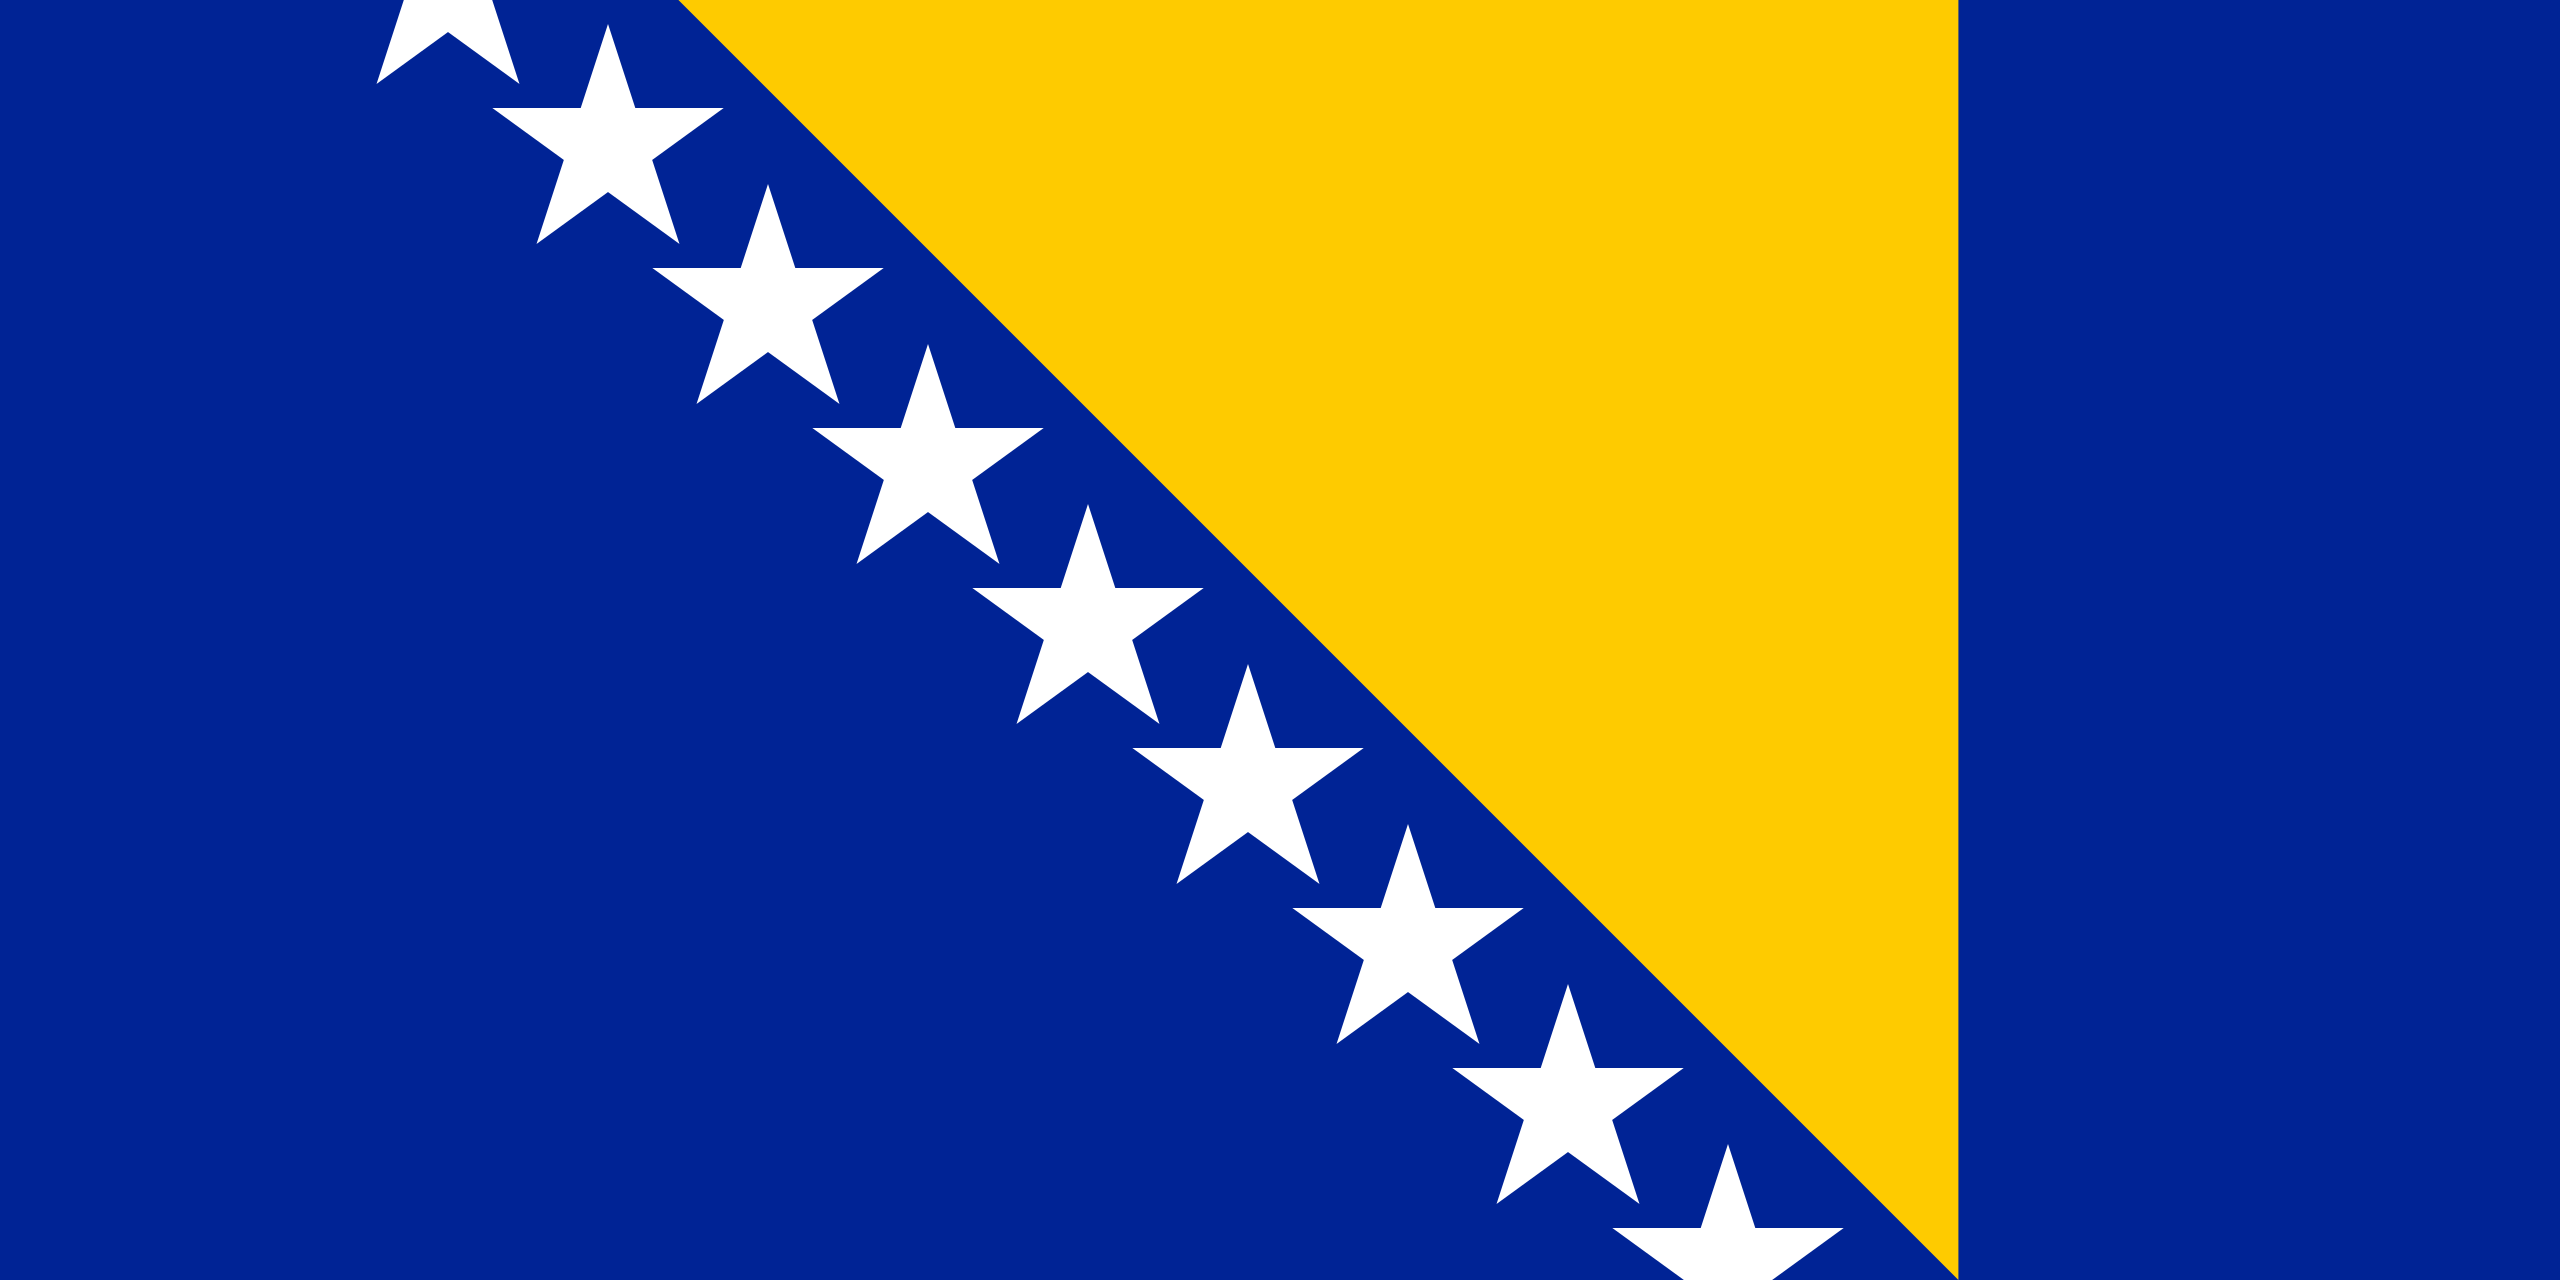 ธงชาติบอสเนียและเฮอร์เซโกวีนา